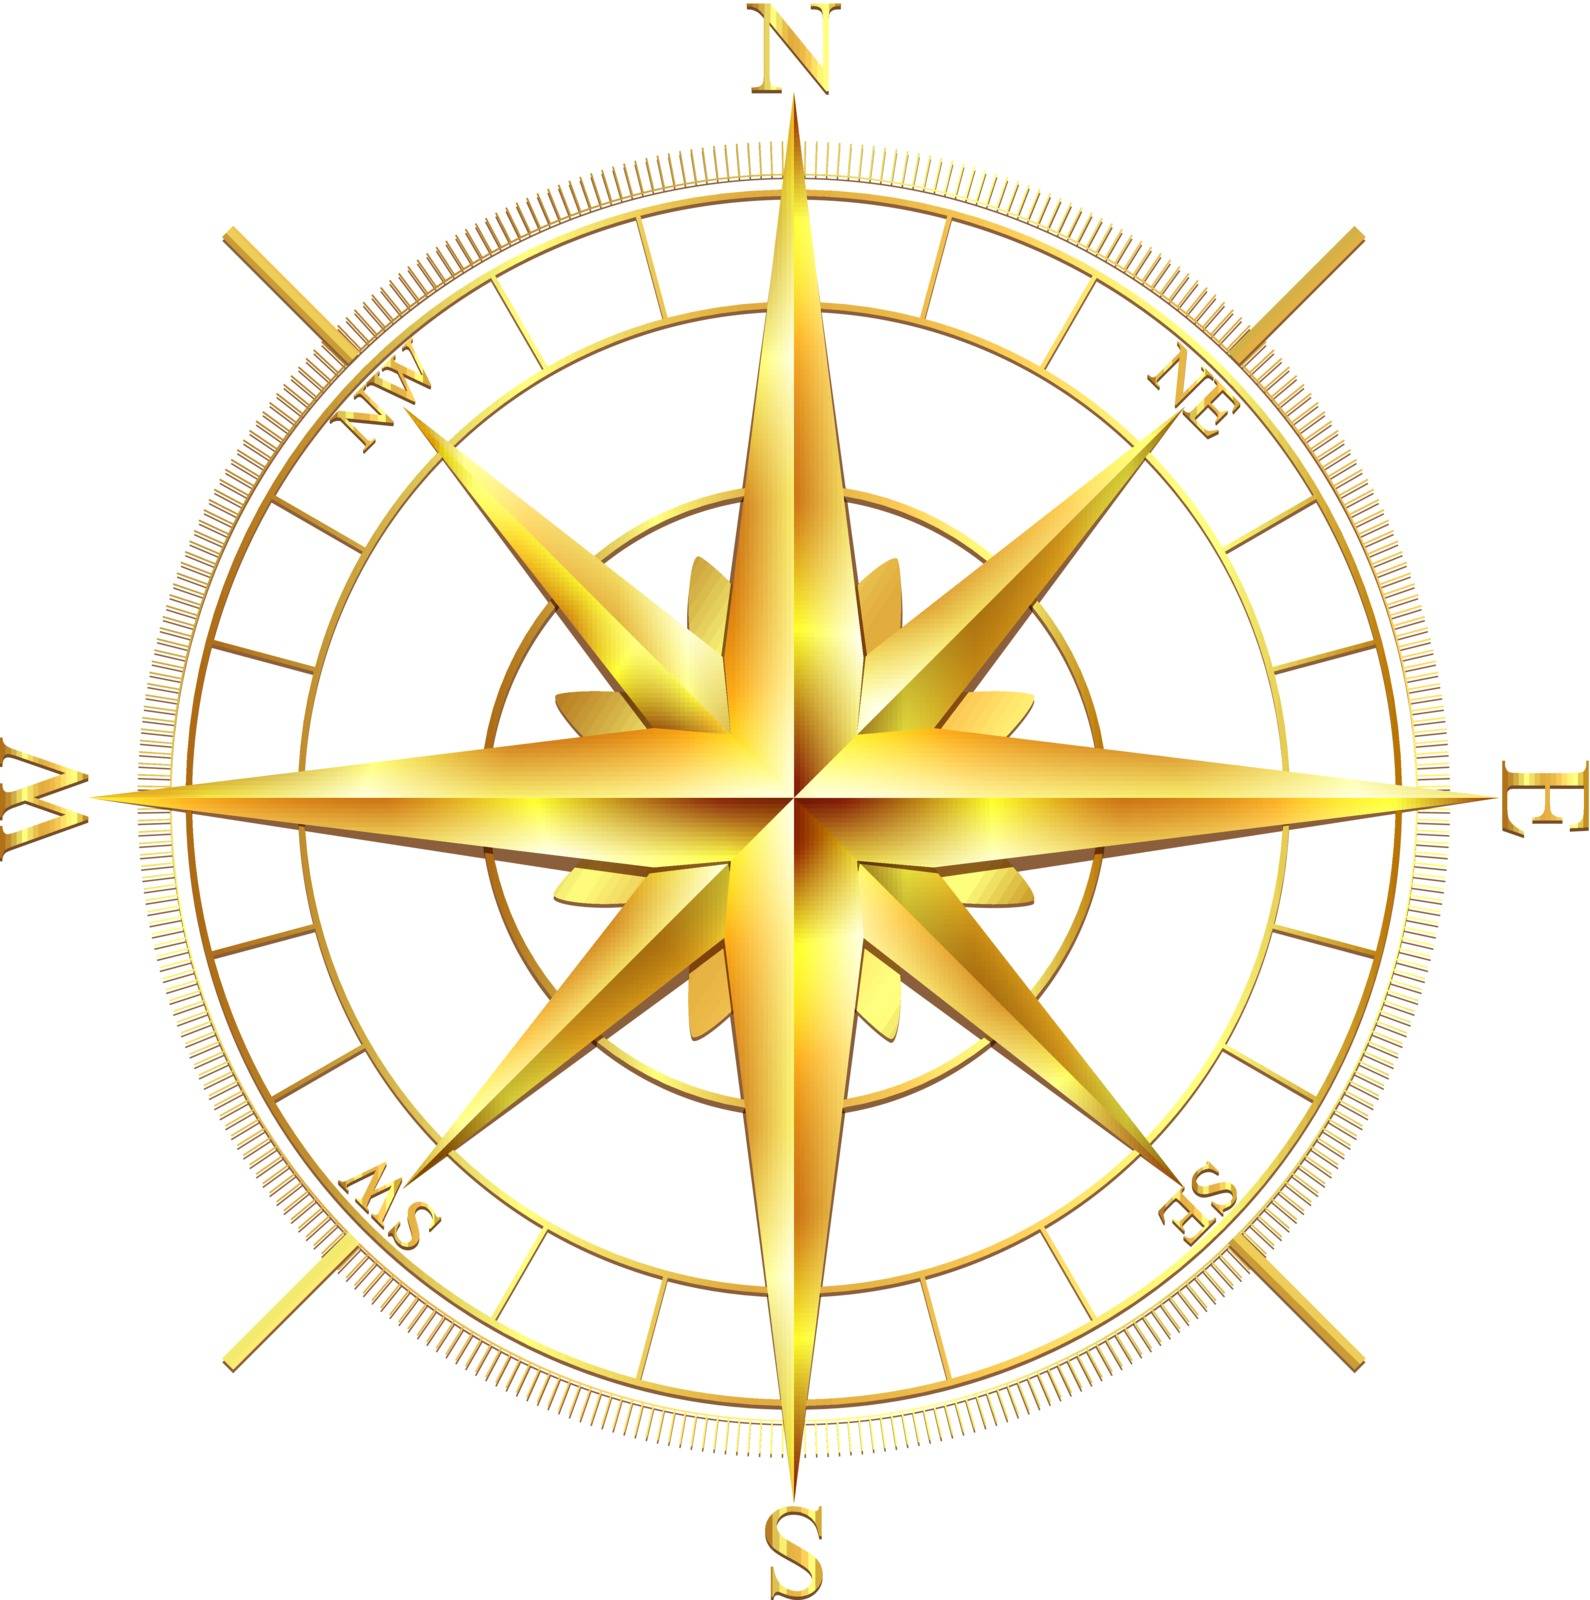 Golden compass rose by tassel78